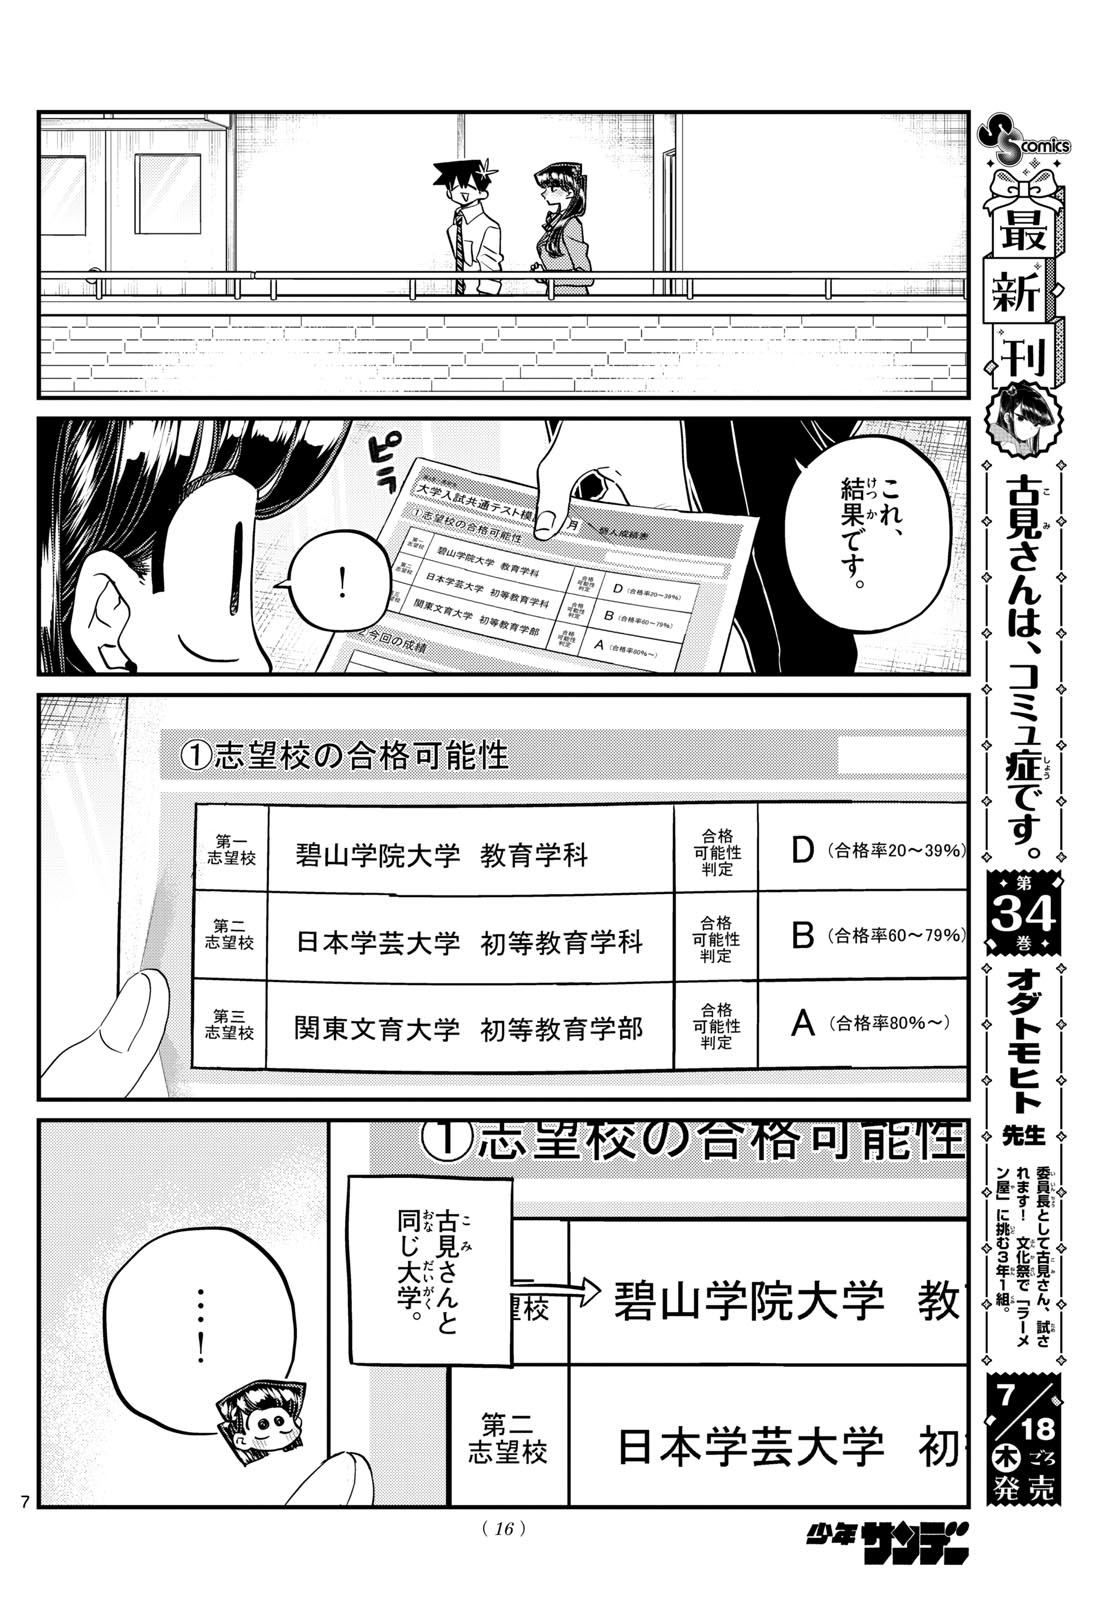 Komi-san wa Komyushou Desu - Chapter 472 - Page 7